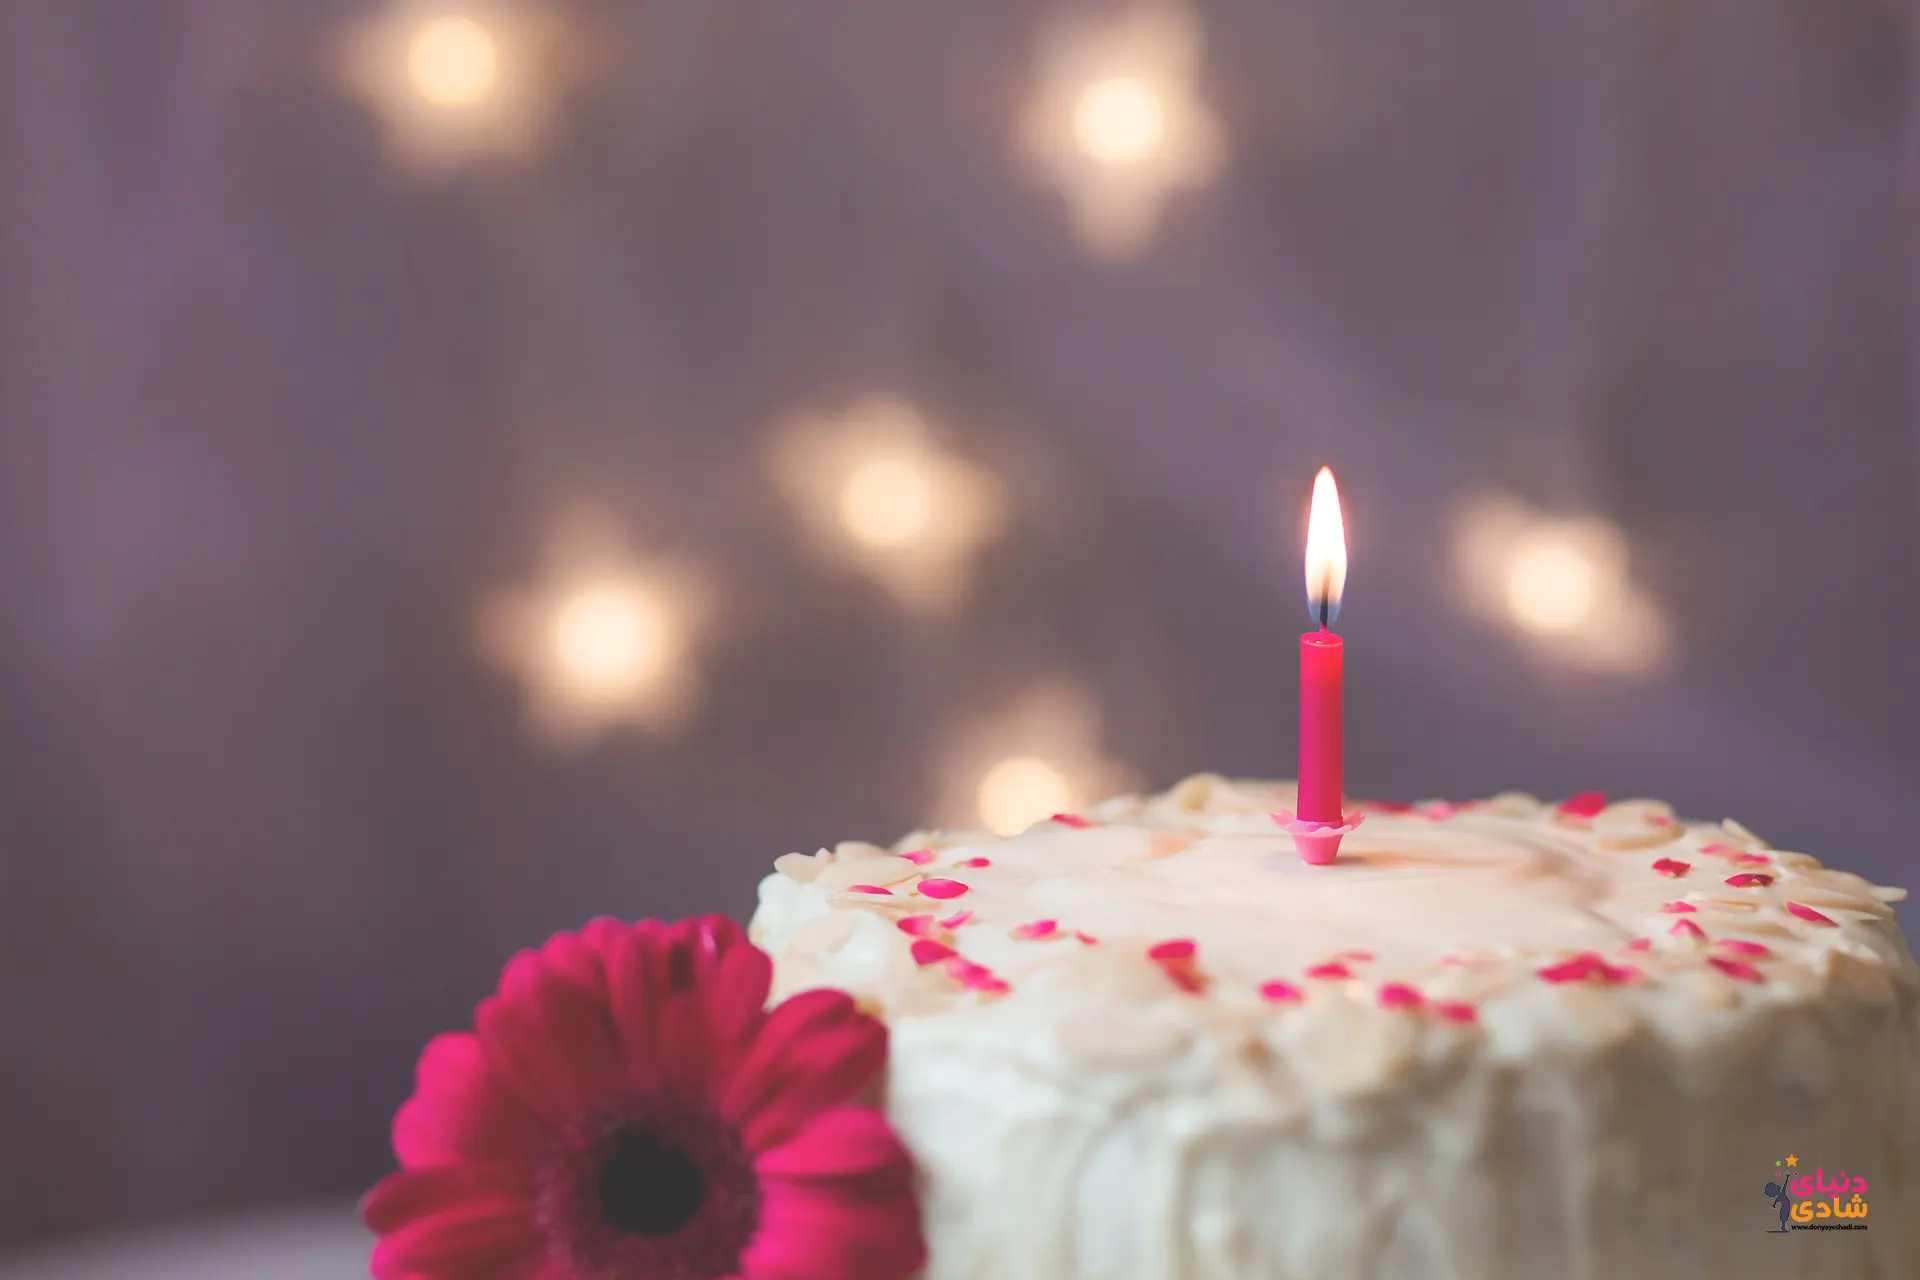 جشن تولد چیست و چرا جشن میگیریم؟